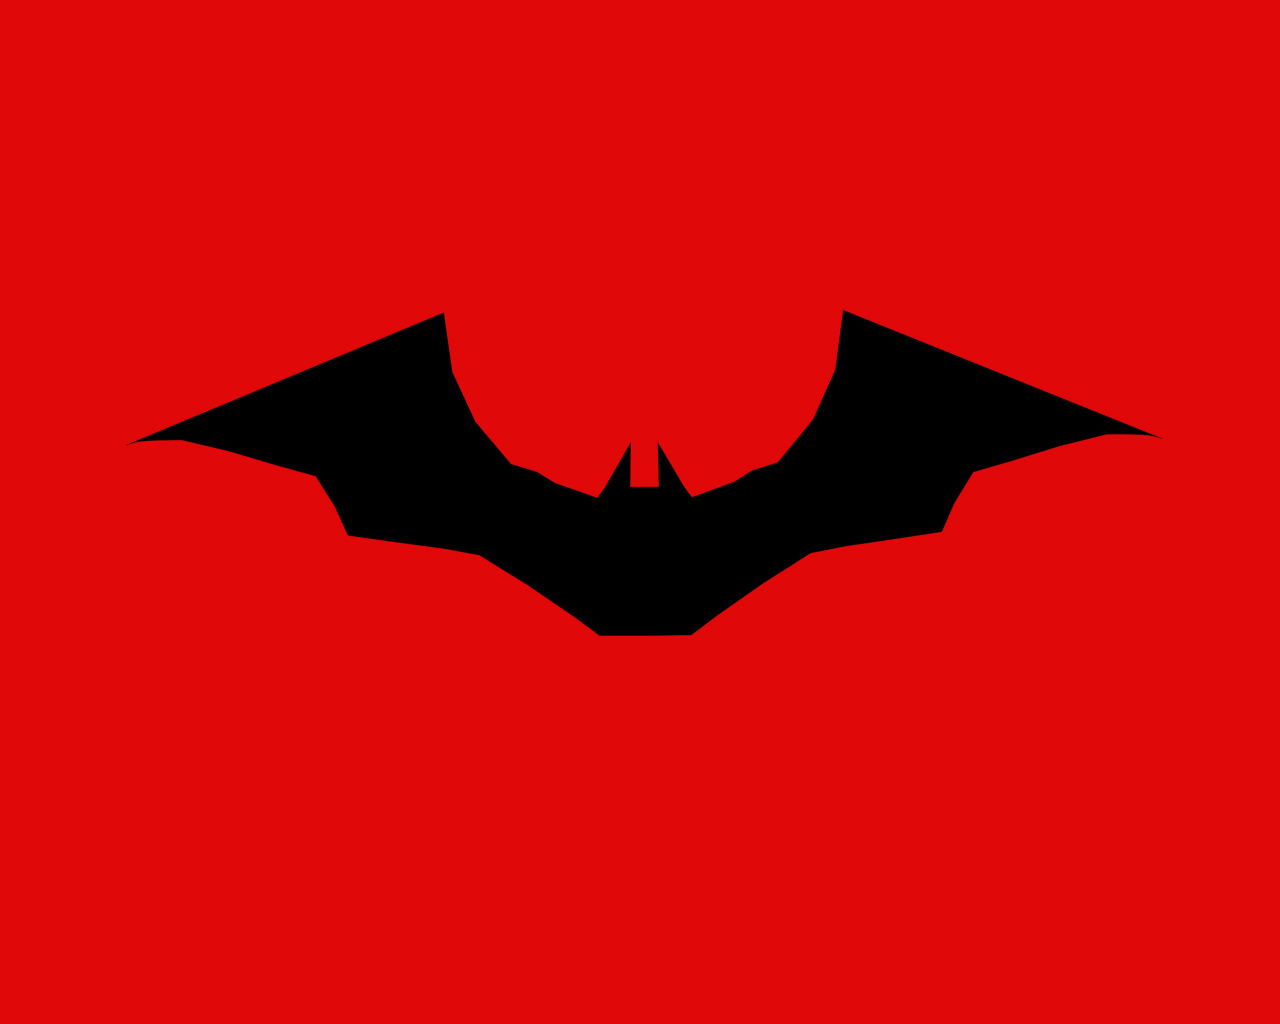 Логотип нового фильма Бэтмен на красном фоне